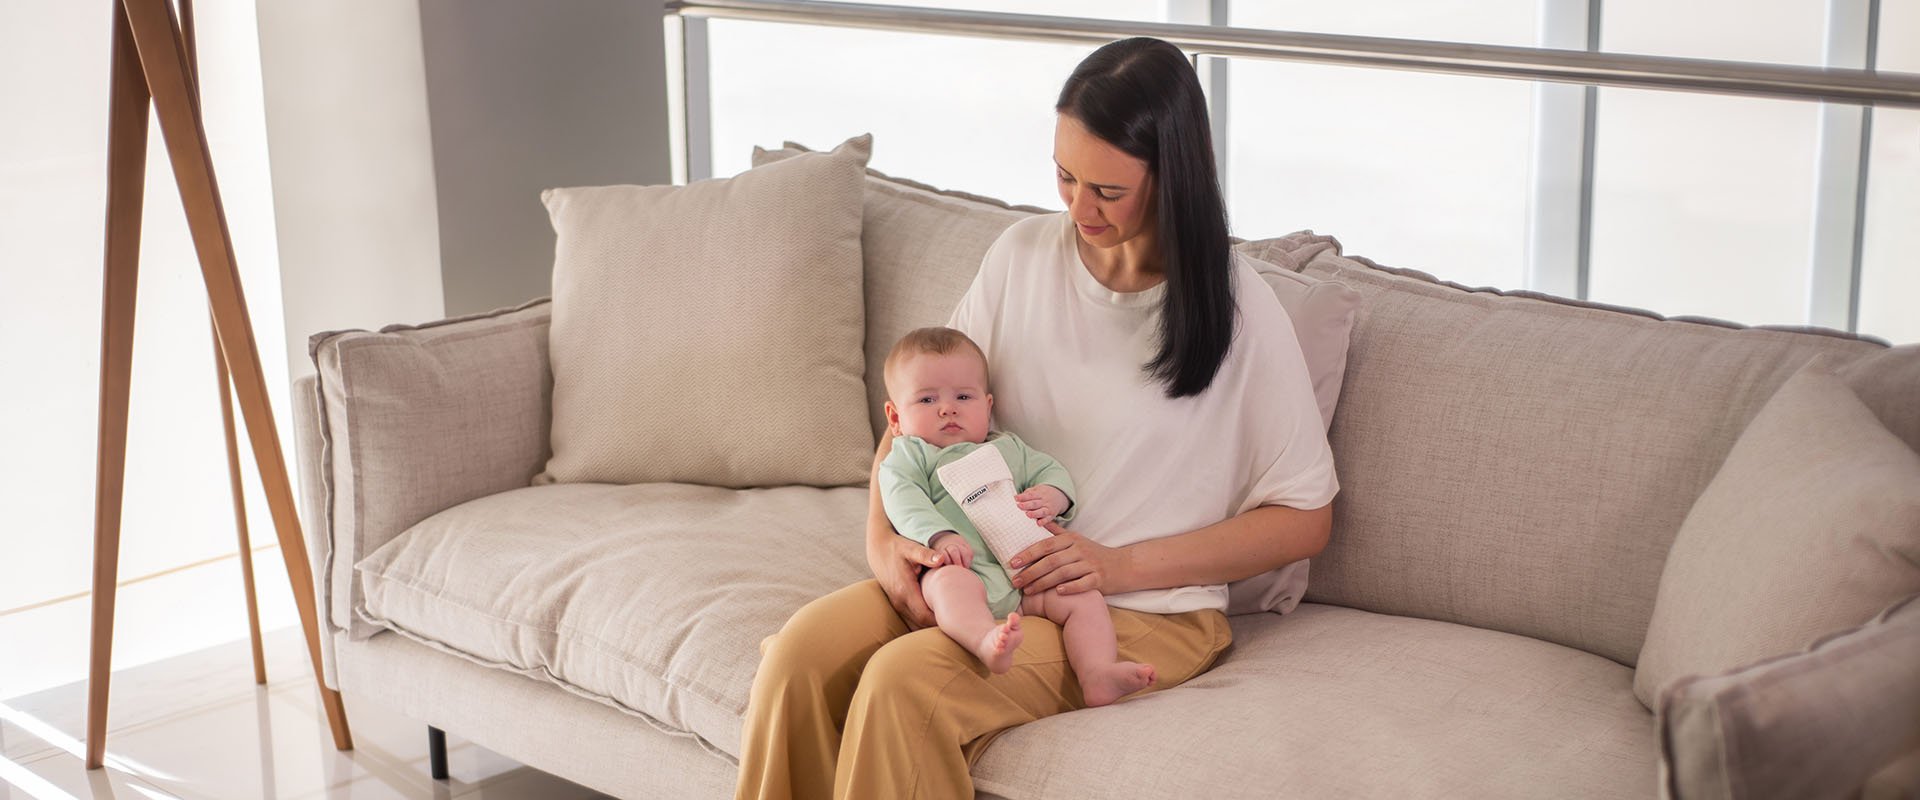 Como aliviar cólica do bebê: uso de calor oferece conforto